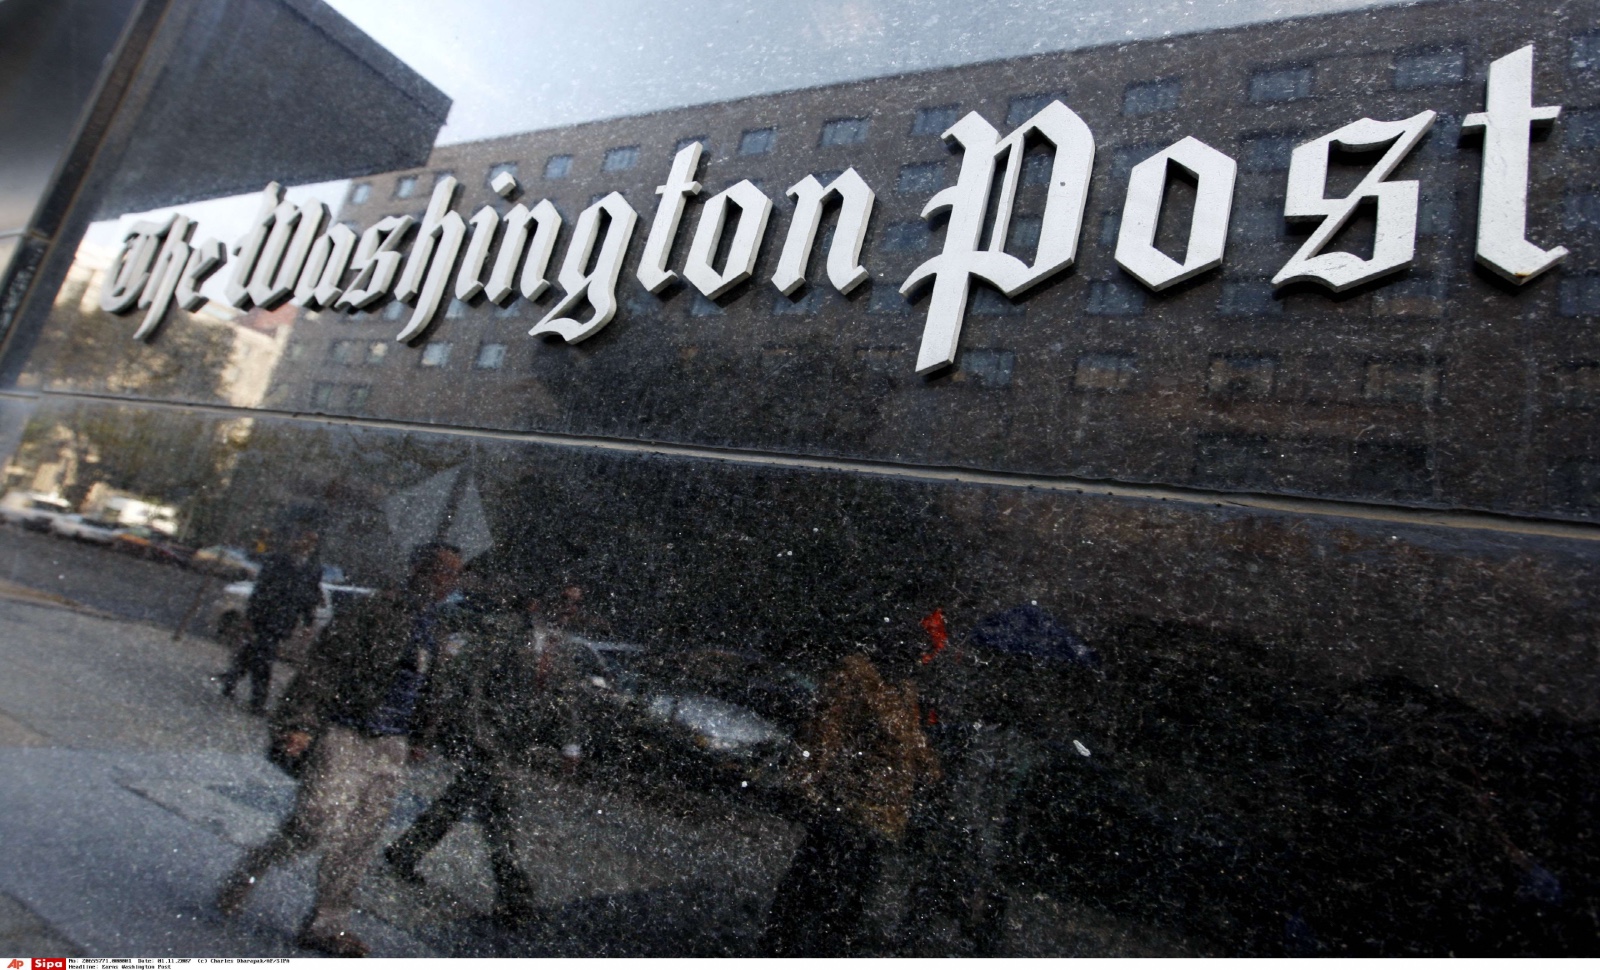 Après avoir vérifié tous les dires de Trump, le « Washington Post » ne veut plus examiner ceux de Biden